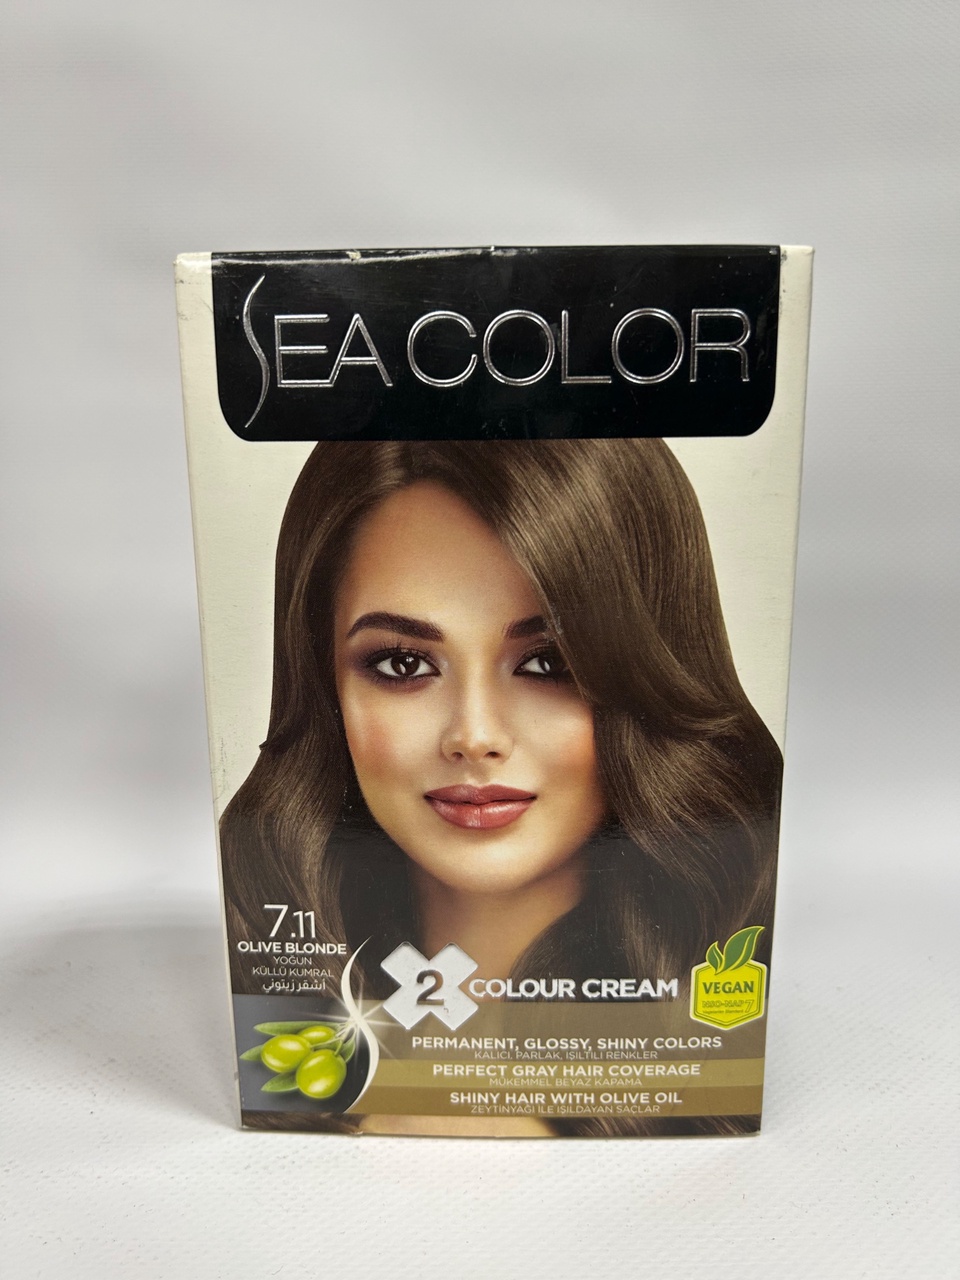 Sea Color 7.11 Краска д/волос «Интенсивно пепельно-русый» - 300 ₽, заказать онлайн.